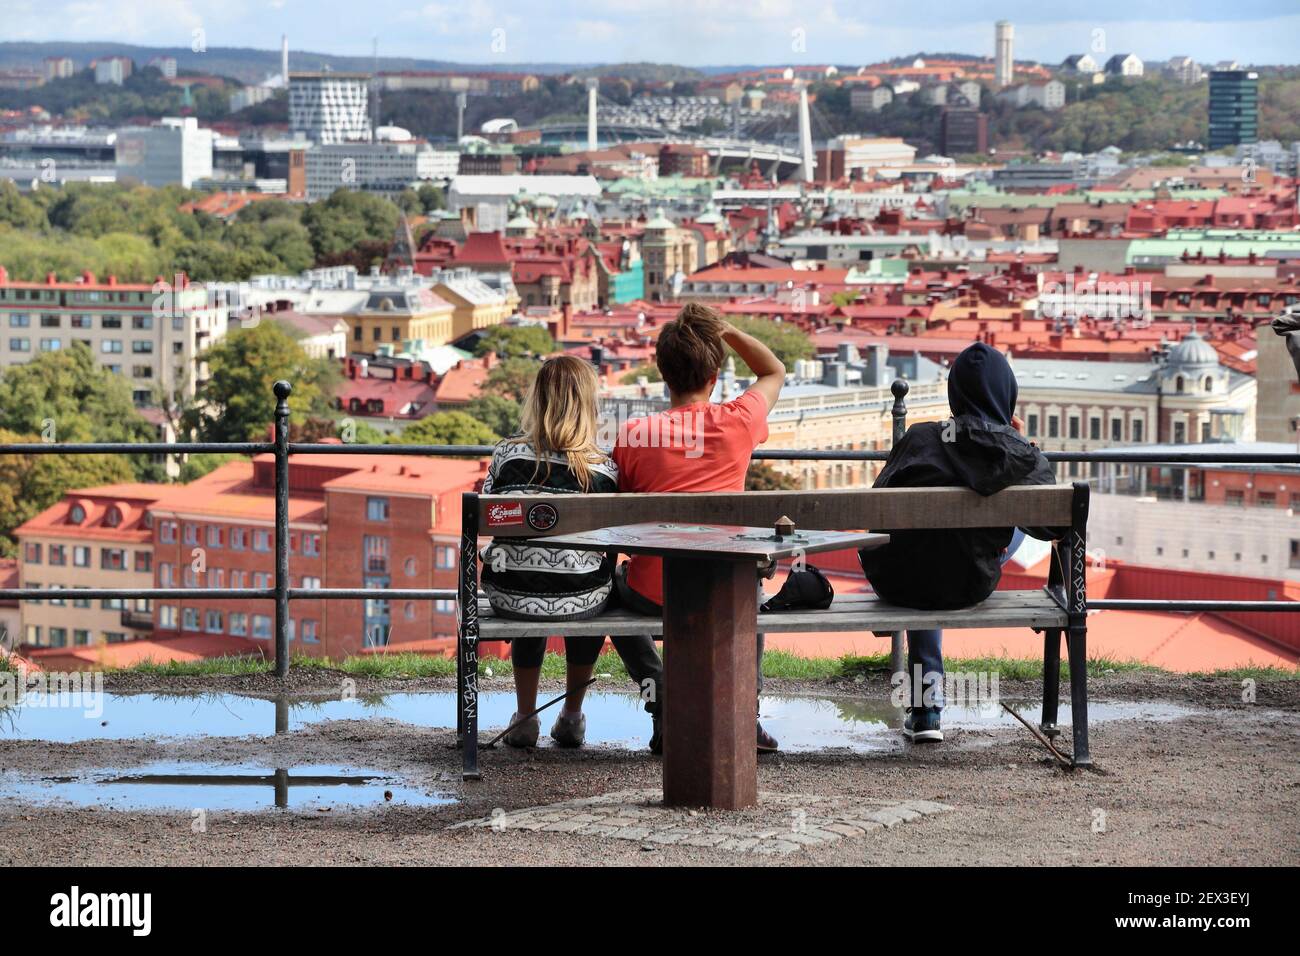 GÖTEBORG, SCHWEDEN - 26. AUGUST 2018: Touristen besuchen Stadt Aussichtspunkt in Göteborg, Schweden. Göteborg ist mit 1 Millionen die 2nd größte Stadt Schwedens Stockfoto